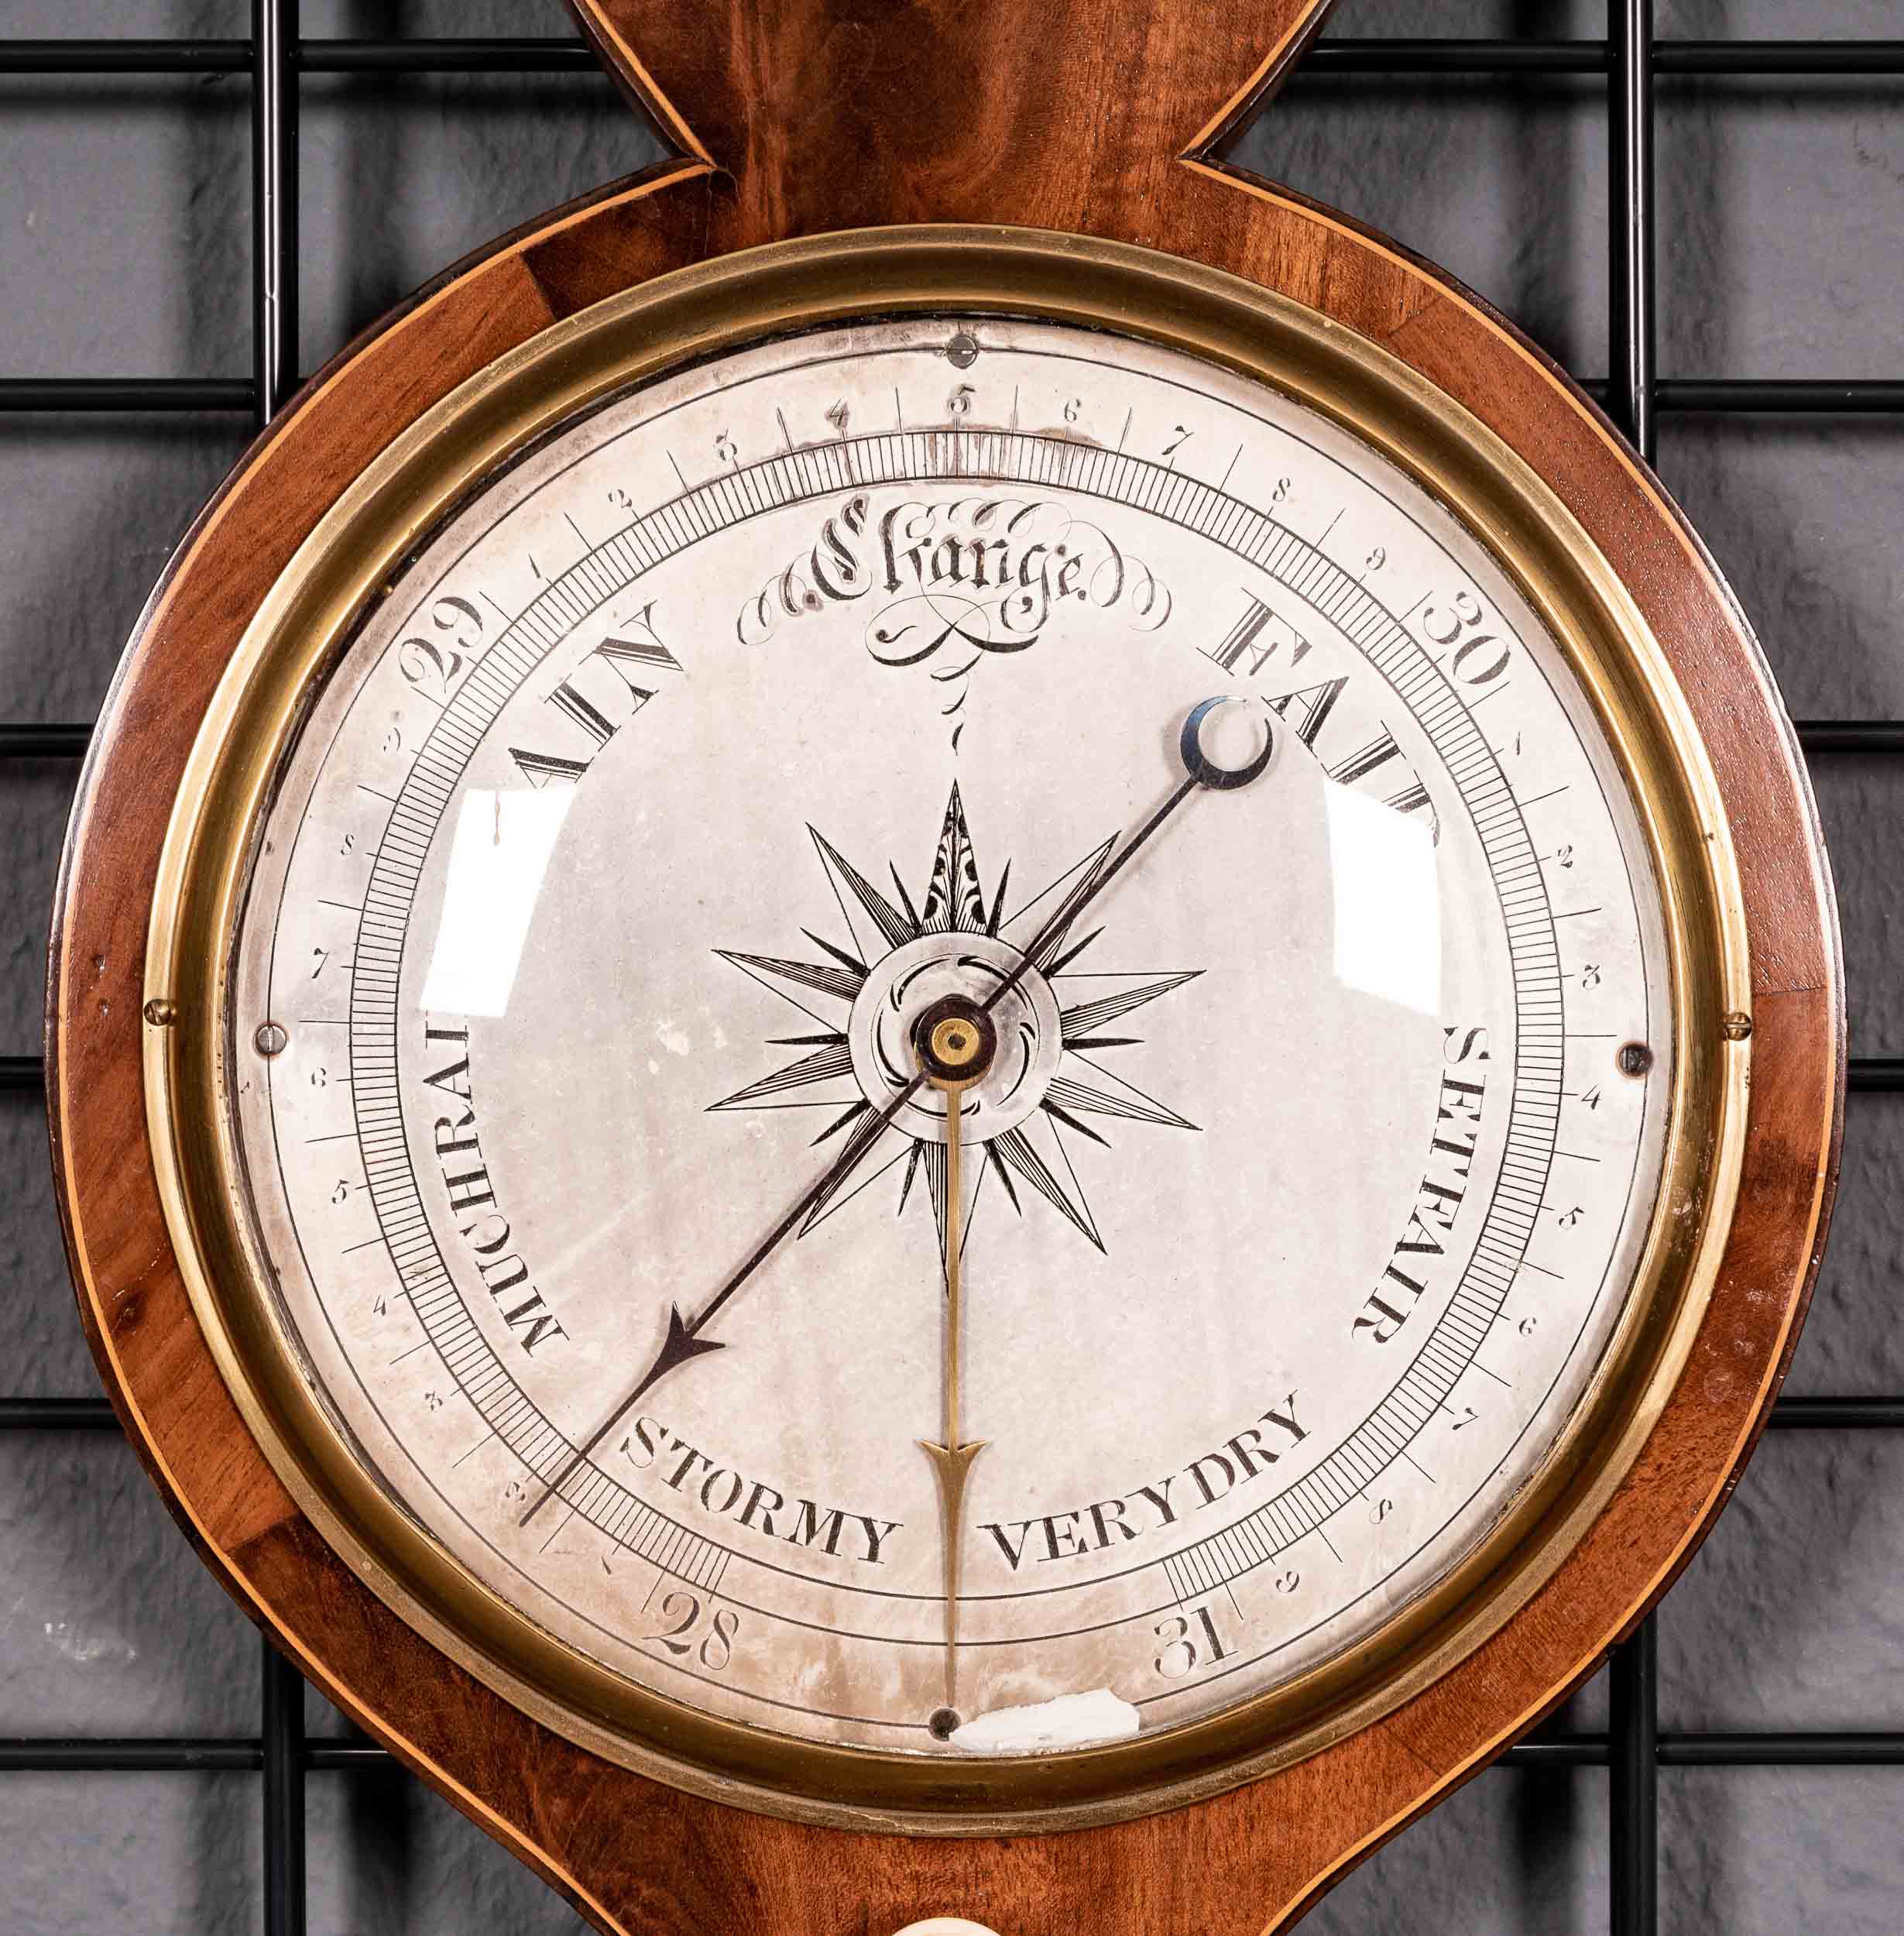 Antikes englisches Barometer mit Wetterstation des A. Vanini Sheffield, aufwändig mit Mahagoni furn - Image 6 of 7